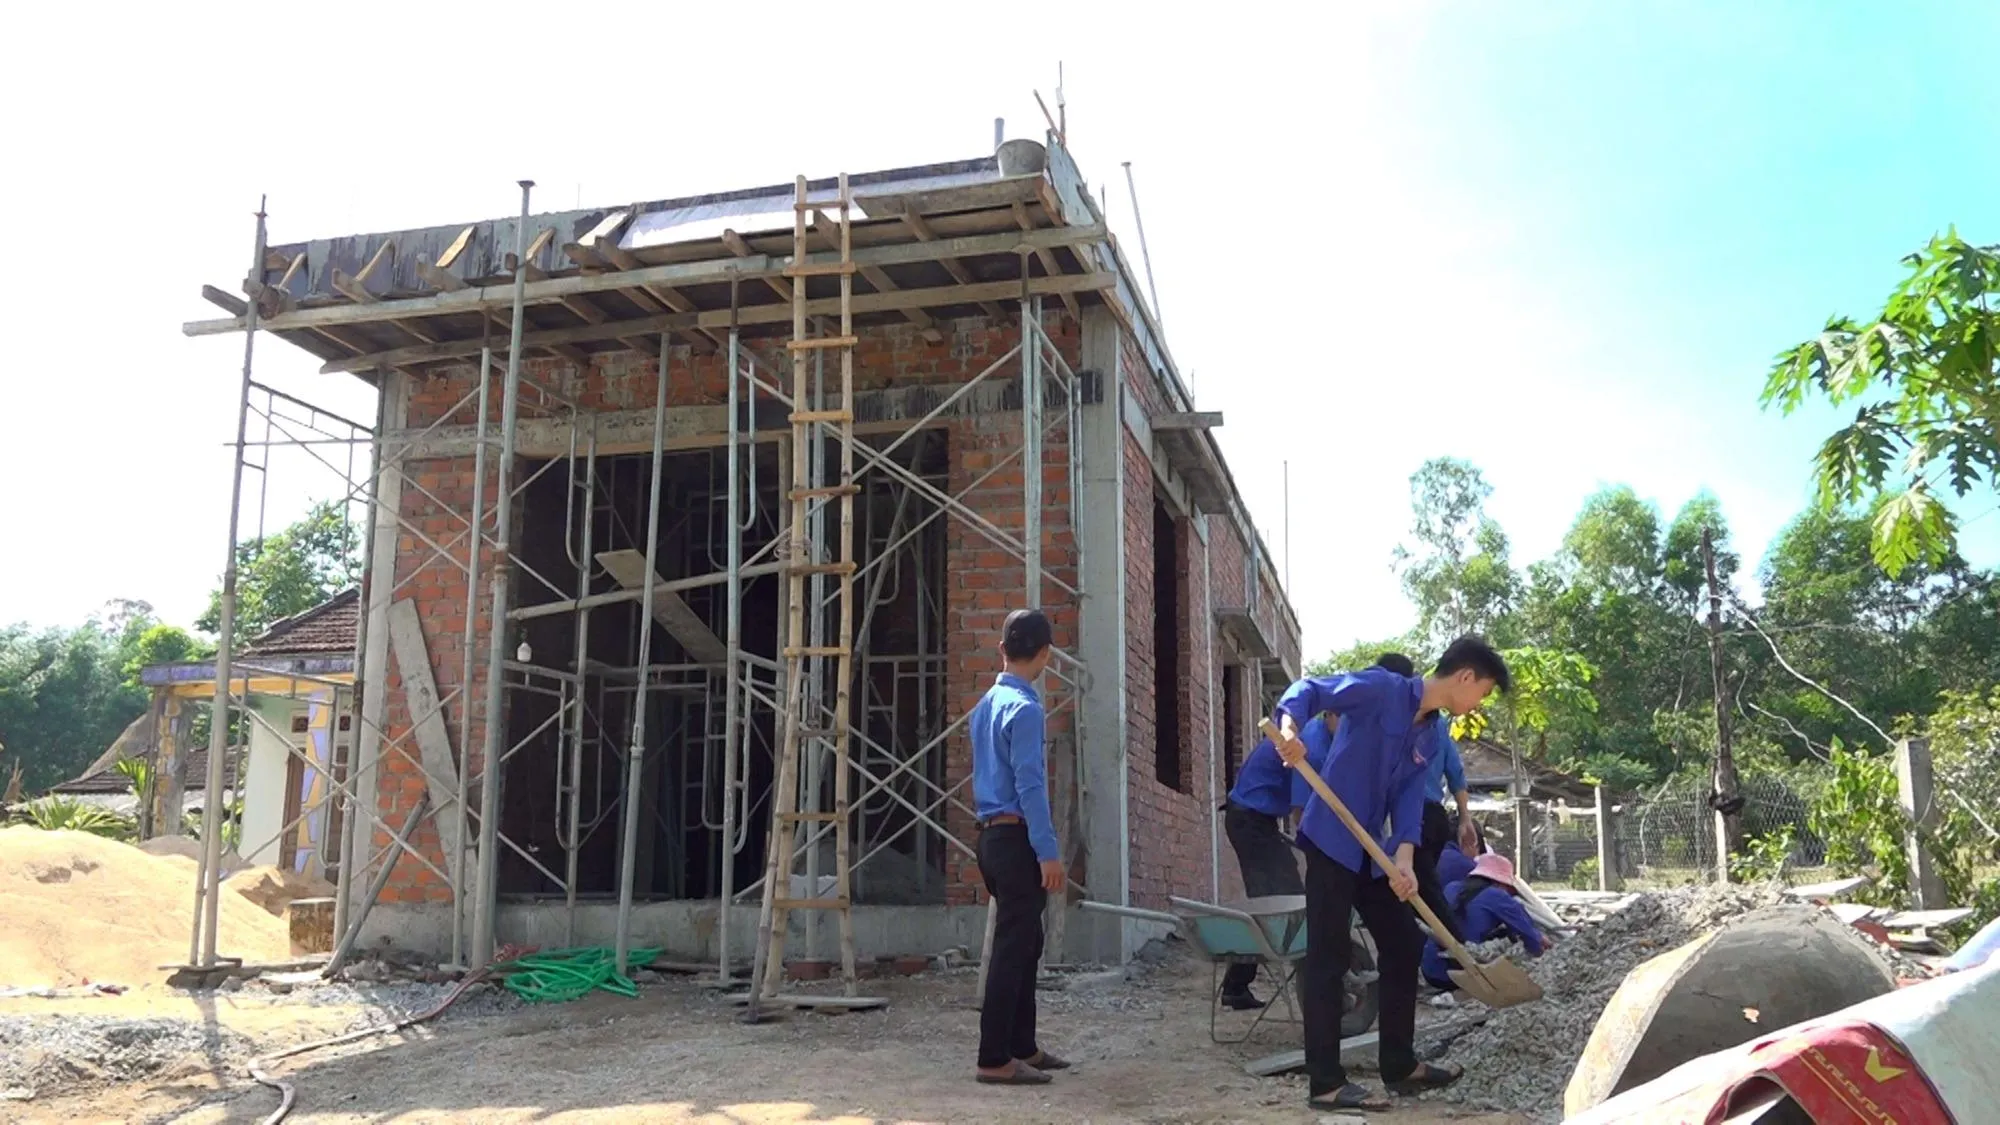 Đoàn thanh niên Quảng Nam đang hỗ trợ người xóa nhà tạm, nhà dột nát trên địa bàn tỉnh.